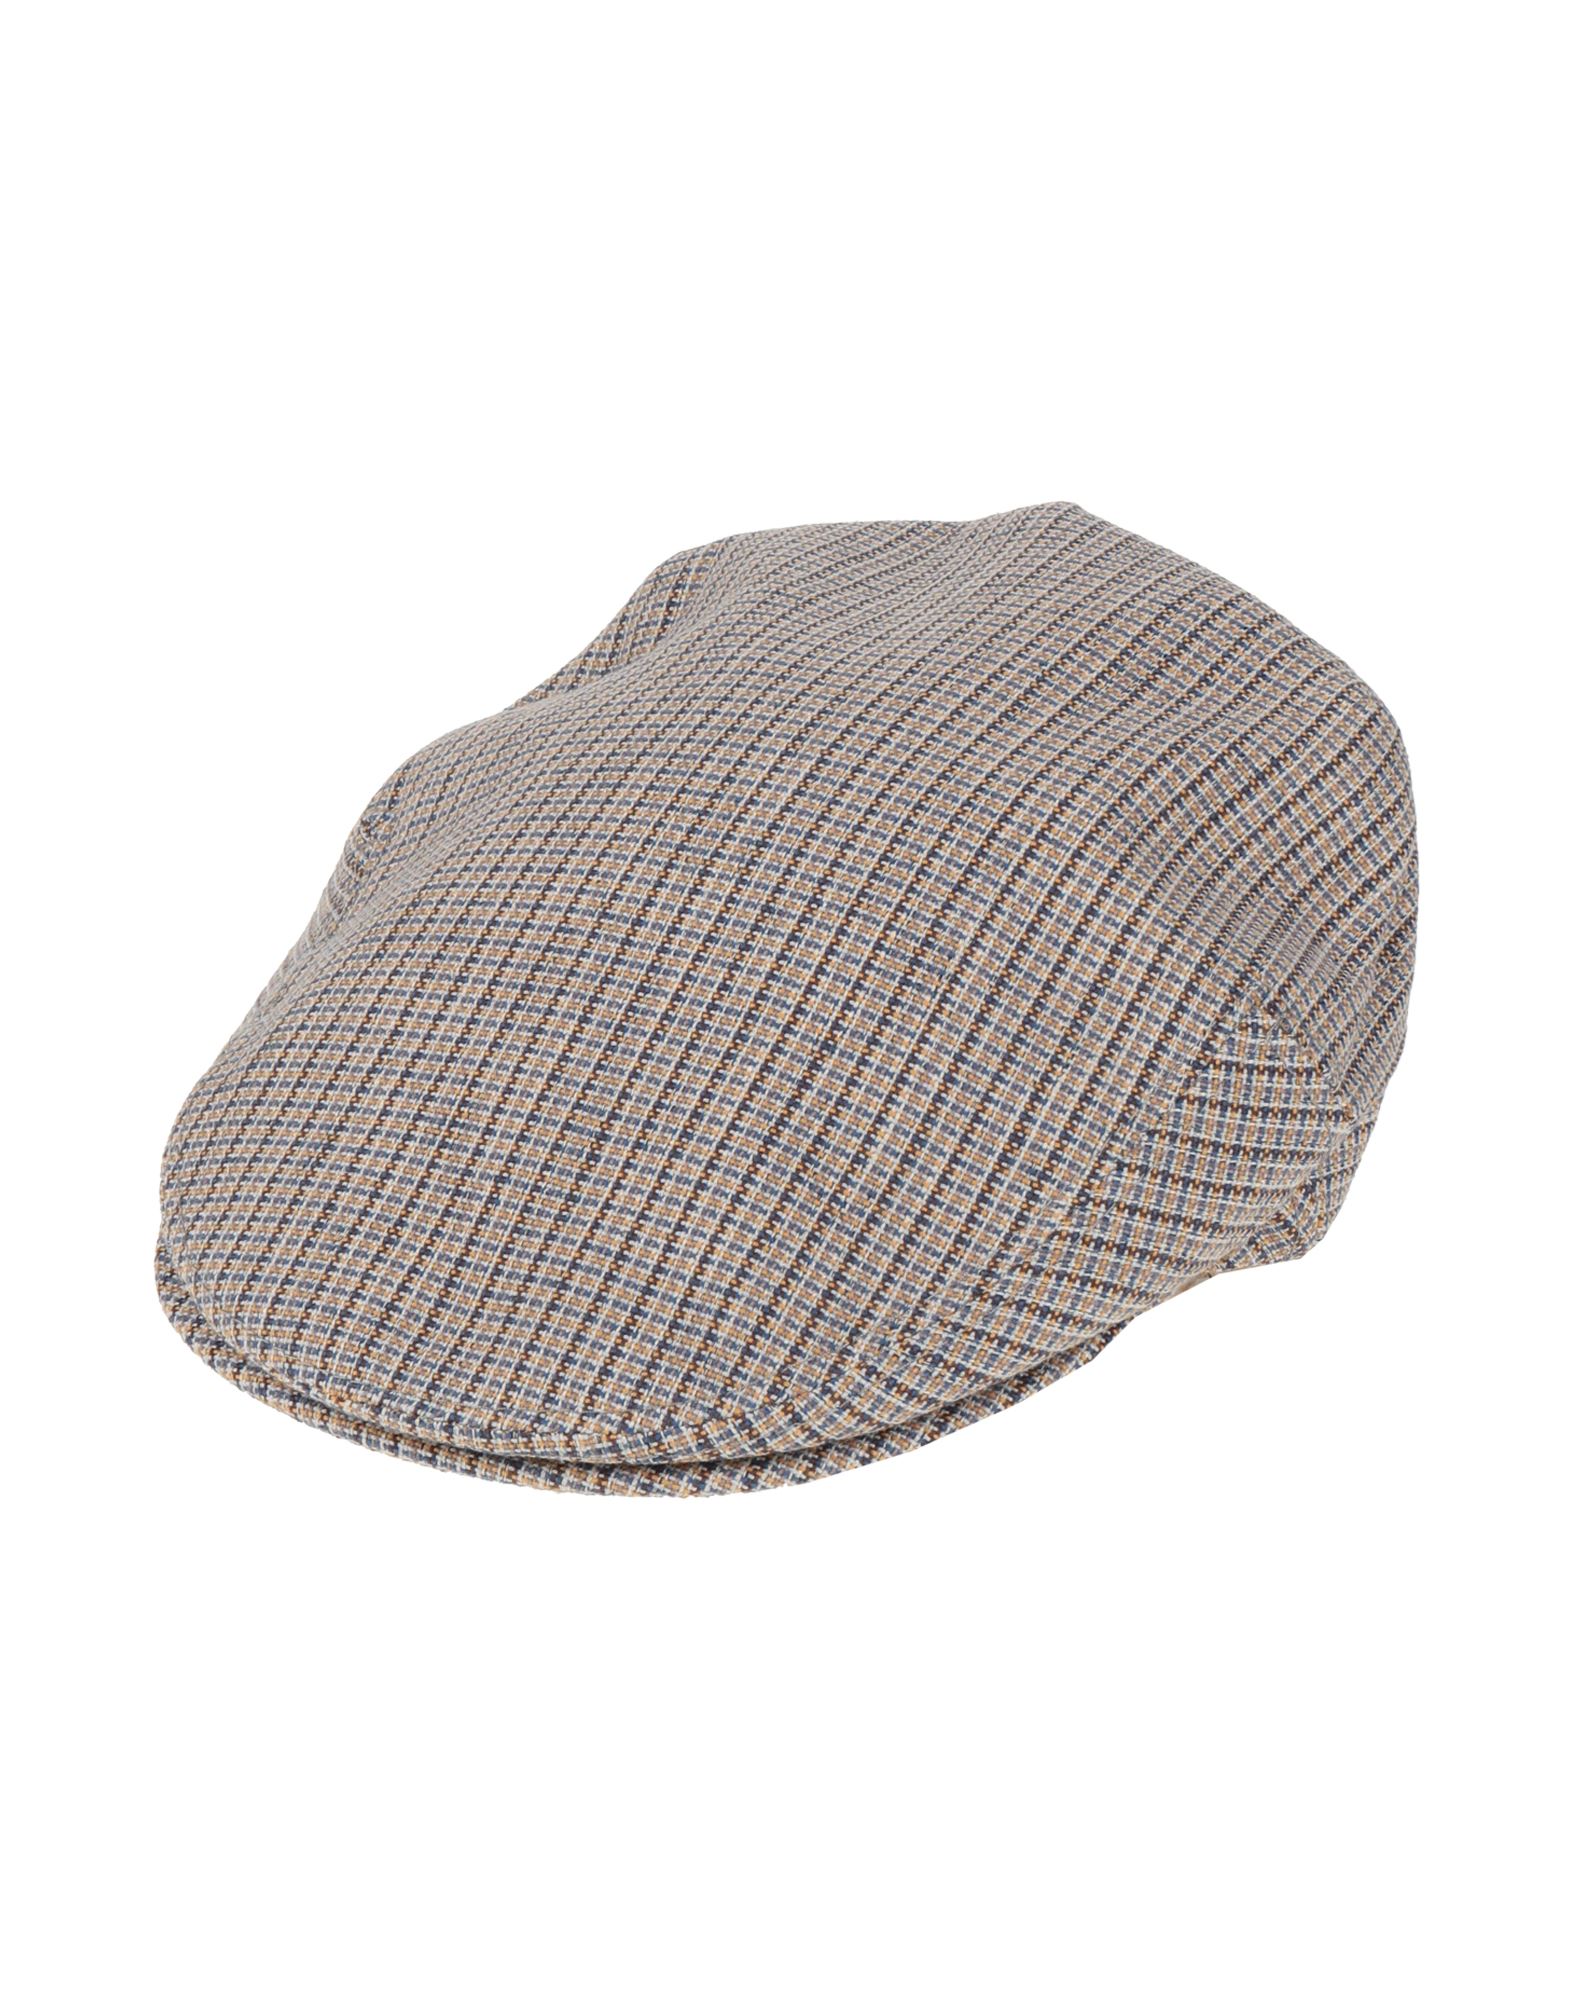 ボルサリーノ(Borsalino) ハンチング メンズ帽子・キャップ | 通販 